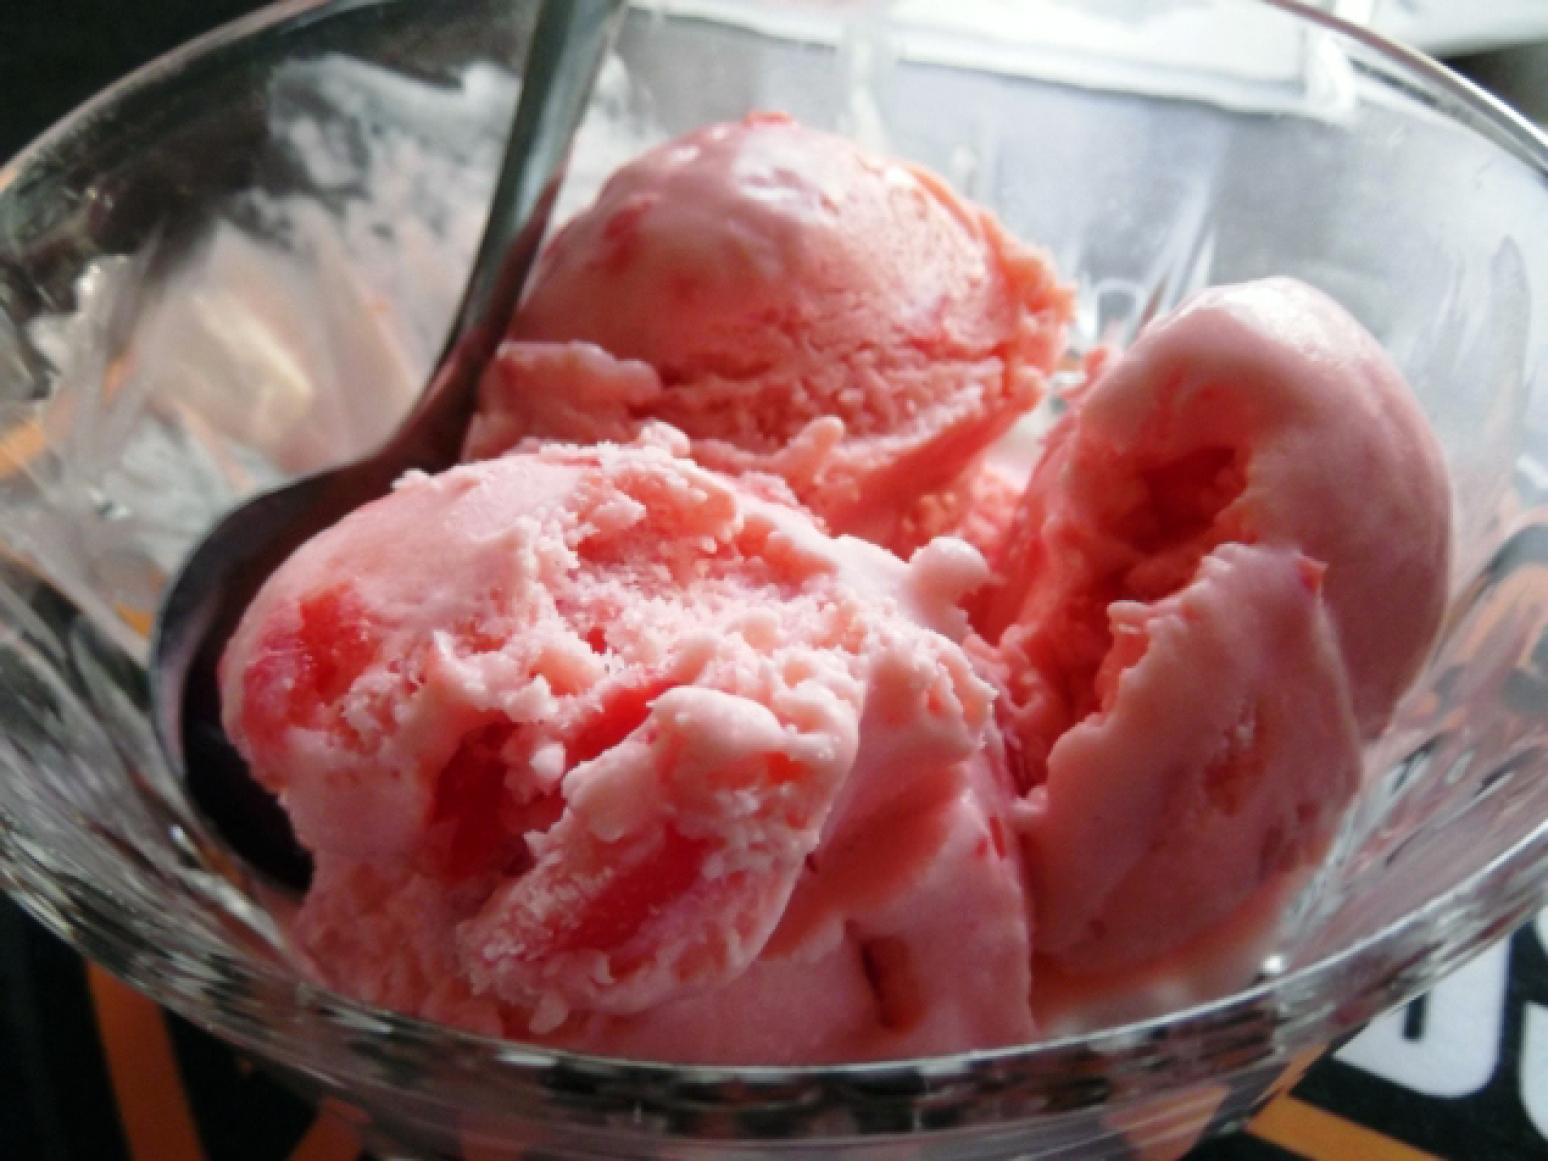 Mama's Cheery Cherry Ice Cream